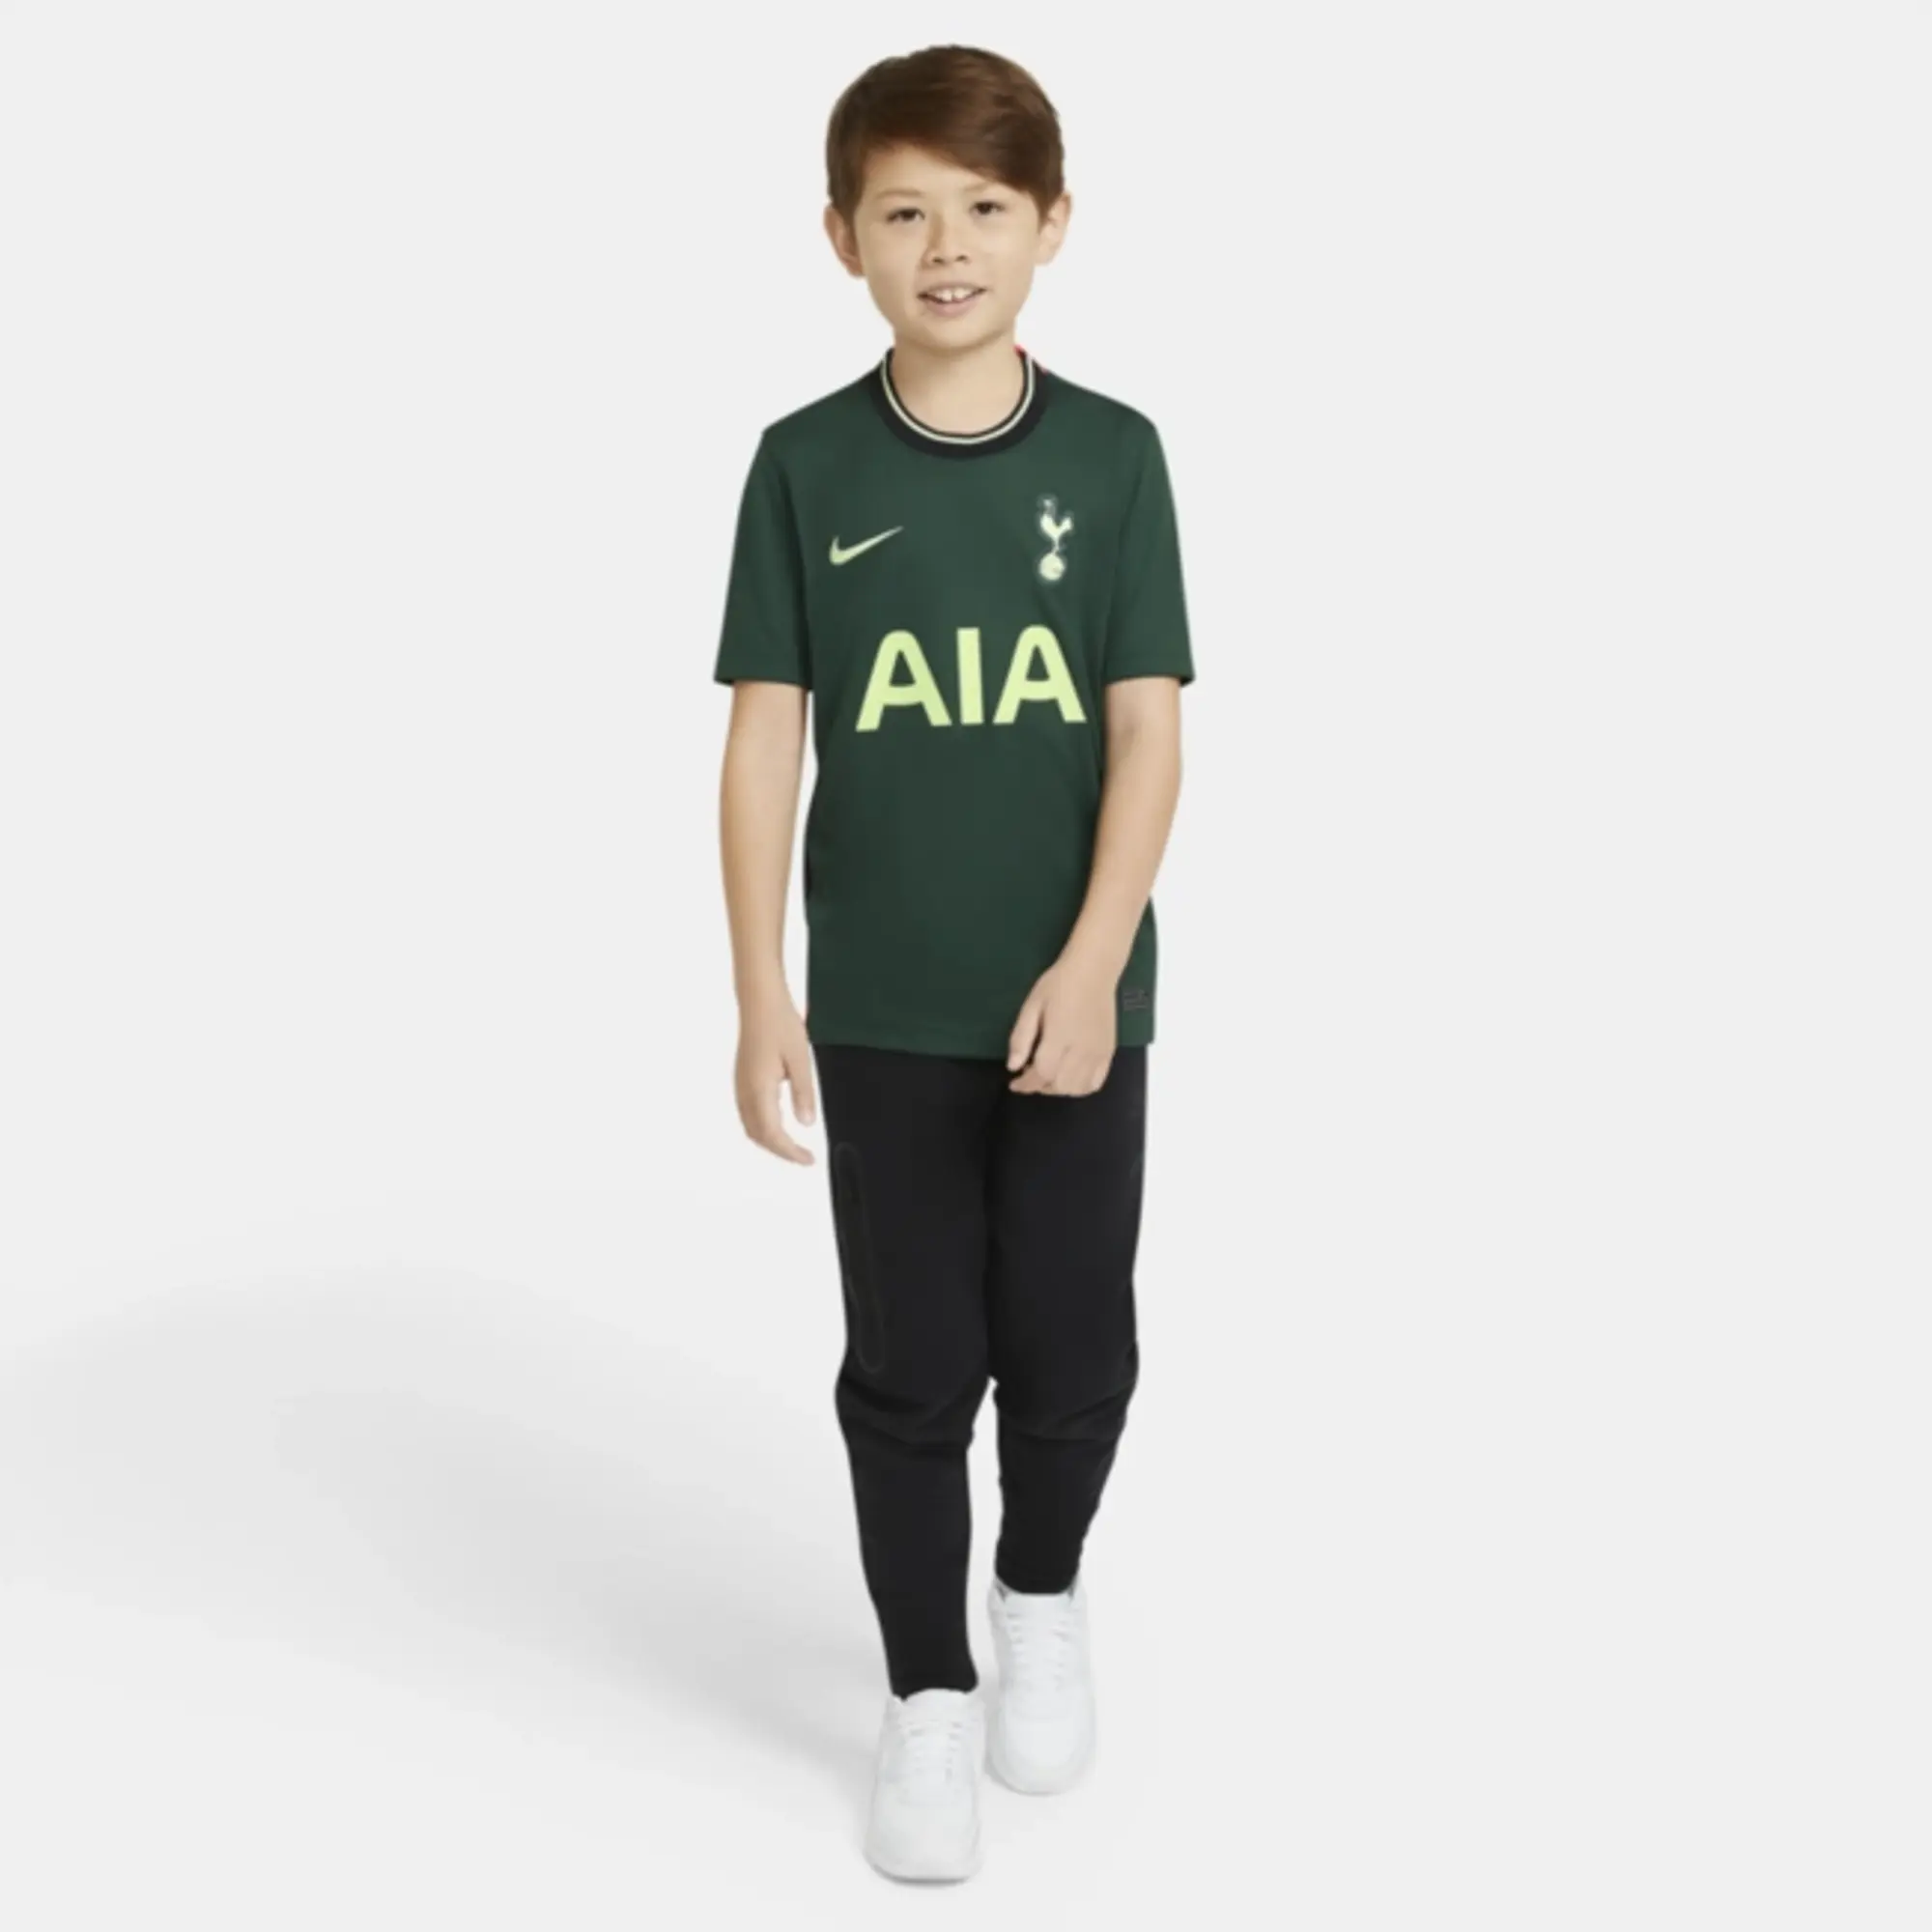 Tottenham Hotspur's 2020/21 away jersey